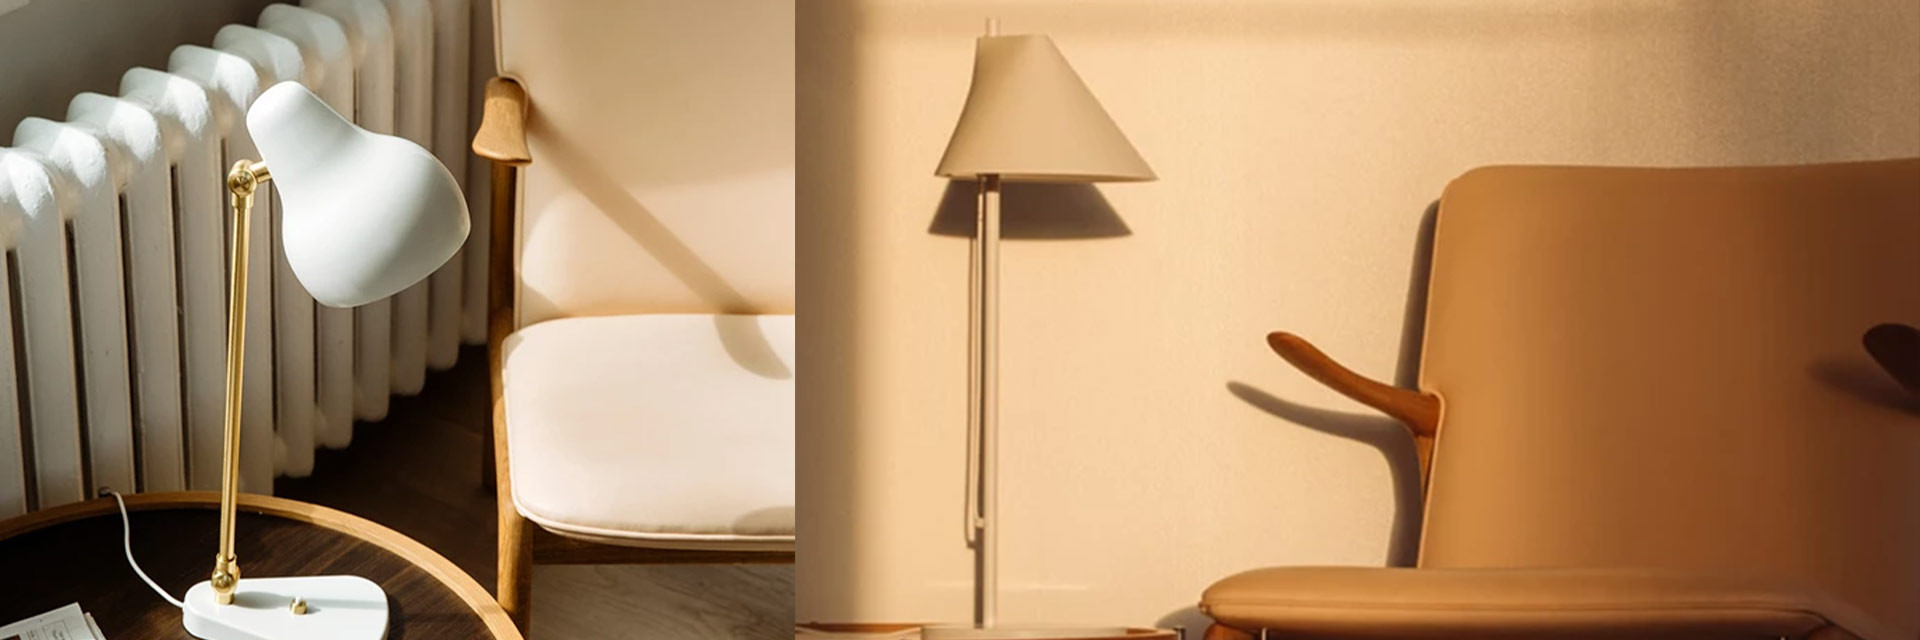 Lampe de table design scandinave et lampe de bureau design scandinave